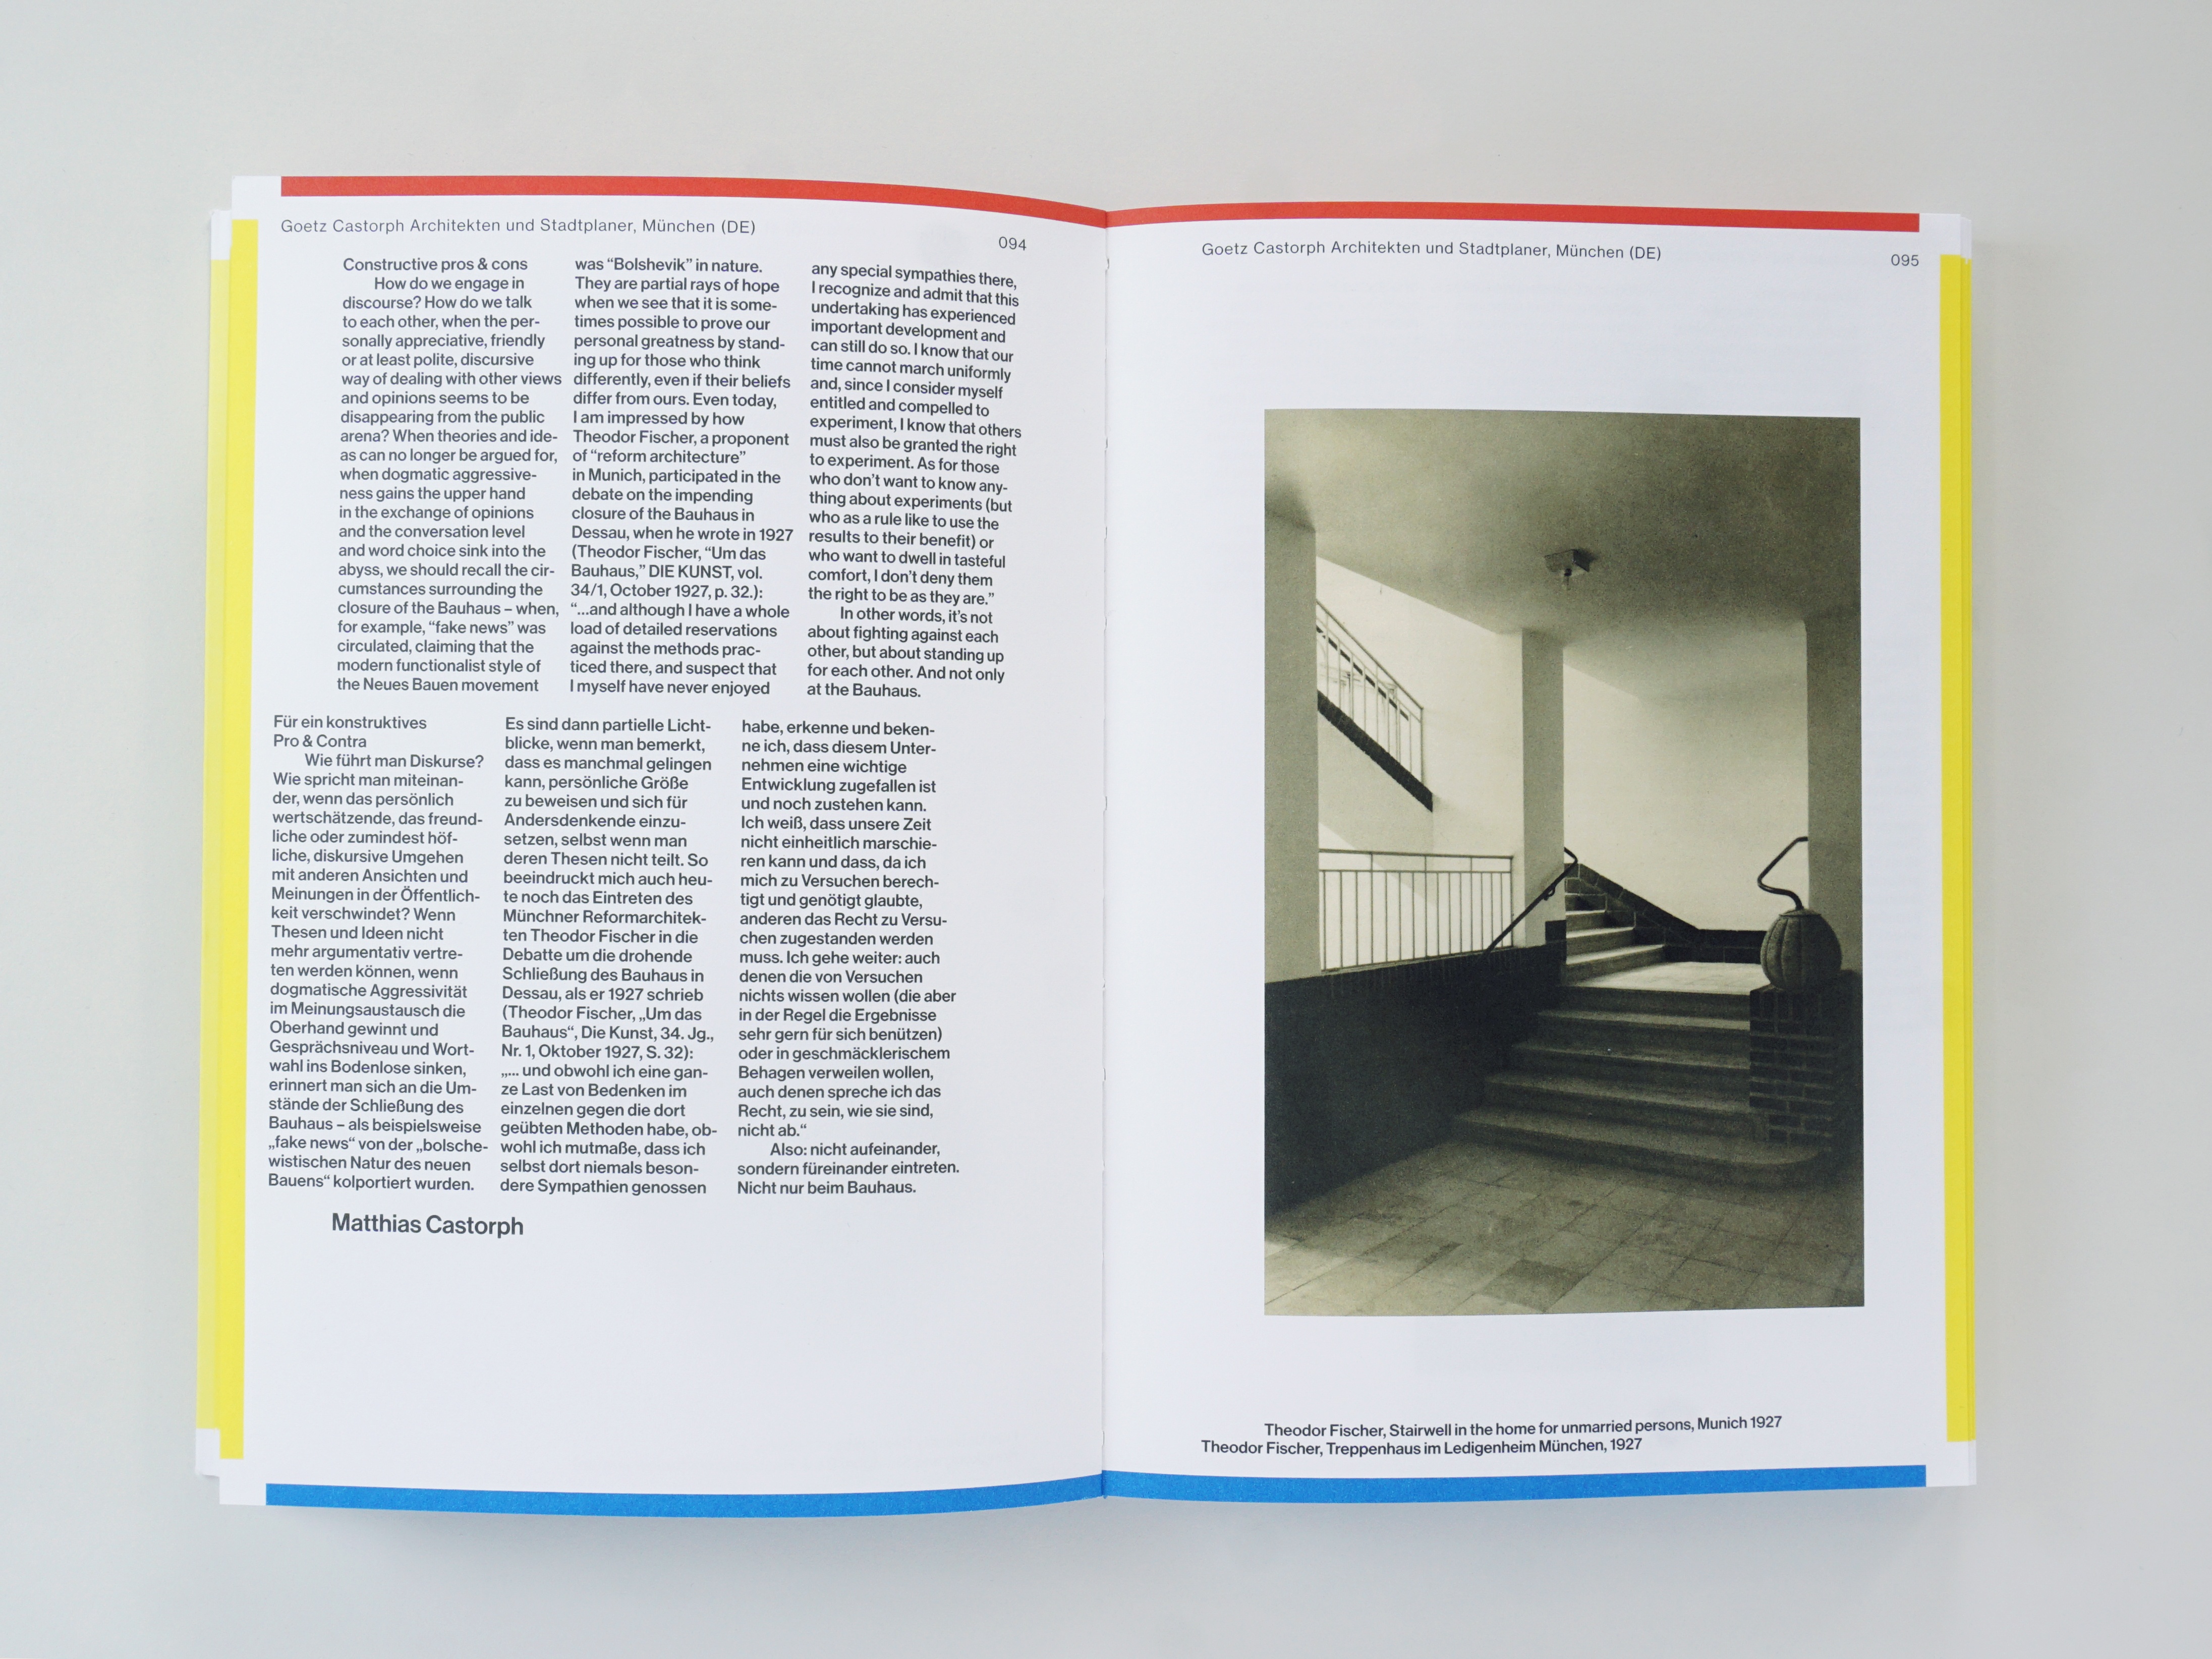 Goetz Castorph Lehmann Tabillion Architektur Städtebau München Mein Bauhaus Beitrag Buch Für ein konstruktives Pro & Contra